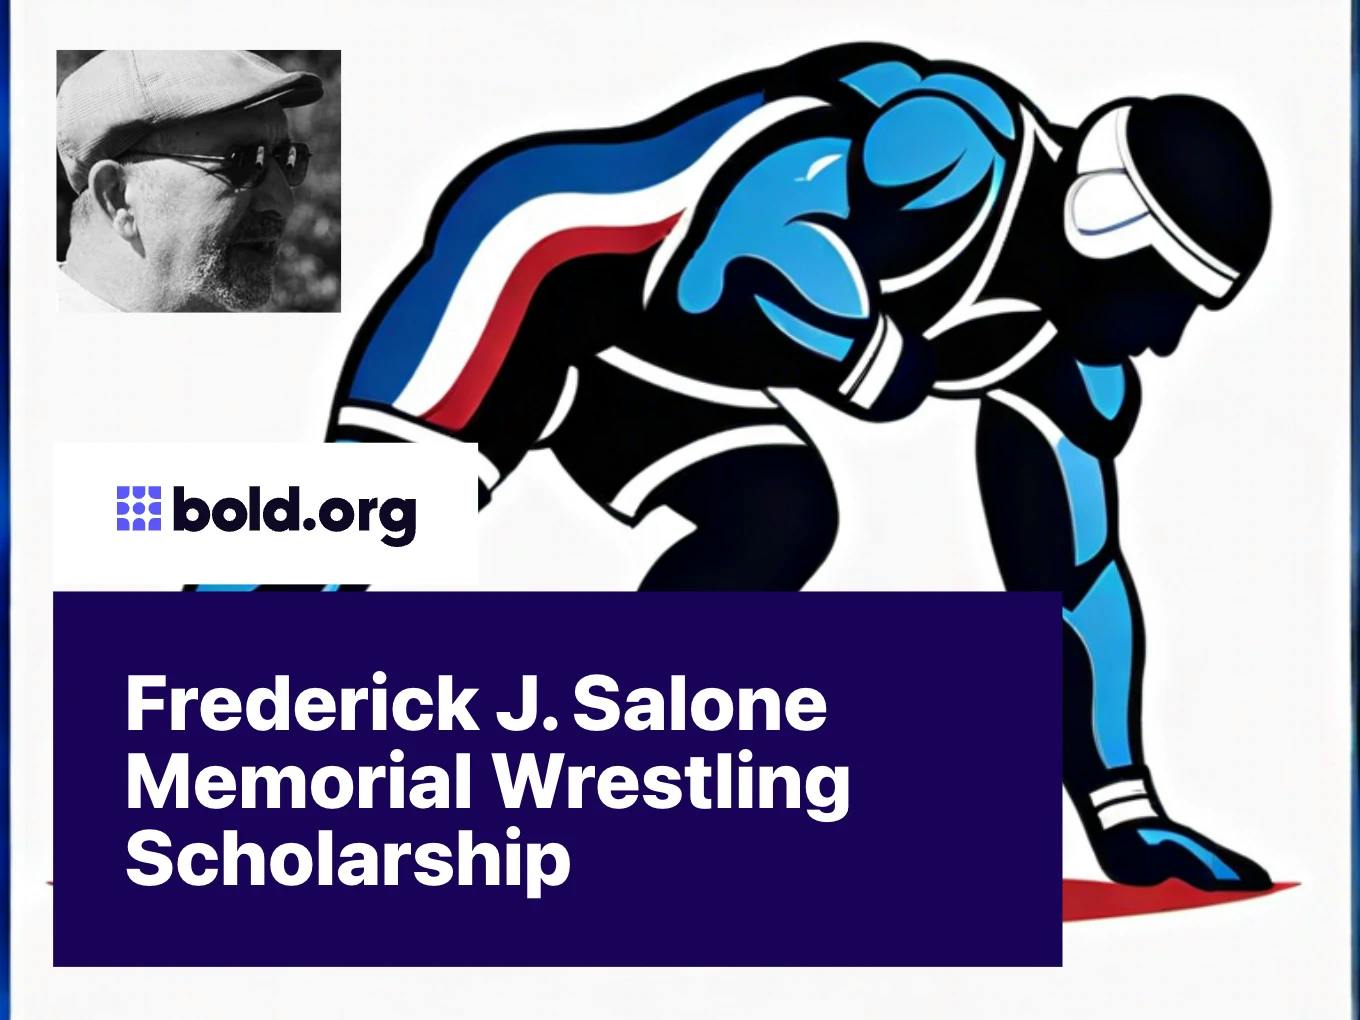 Frederick J. Salone Memorial Wrestling Scholarship